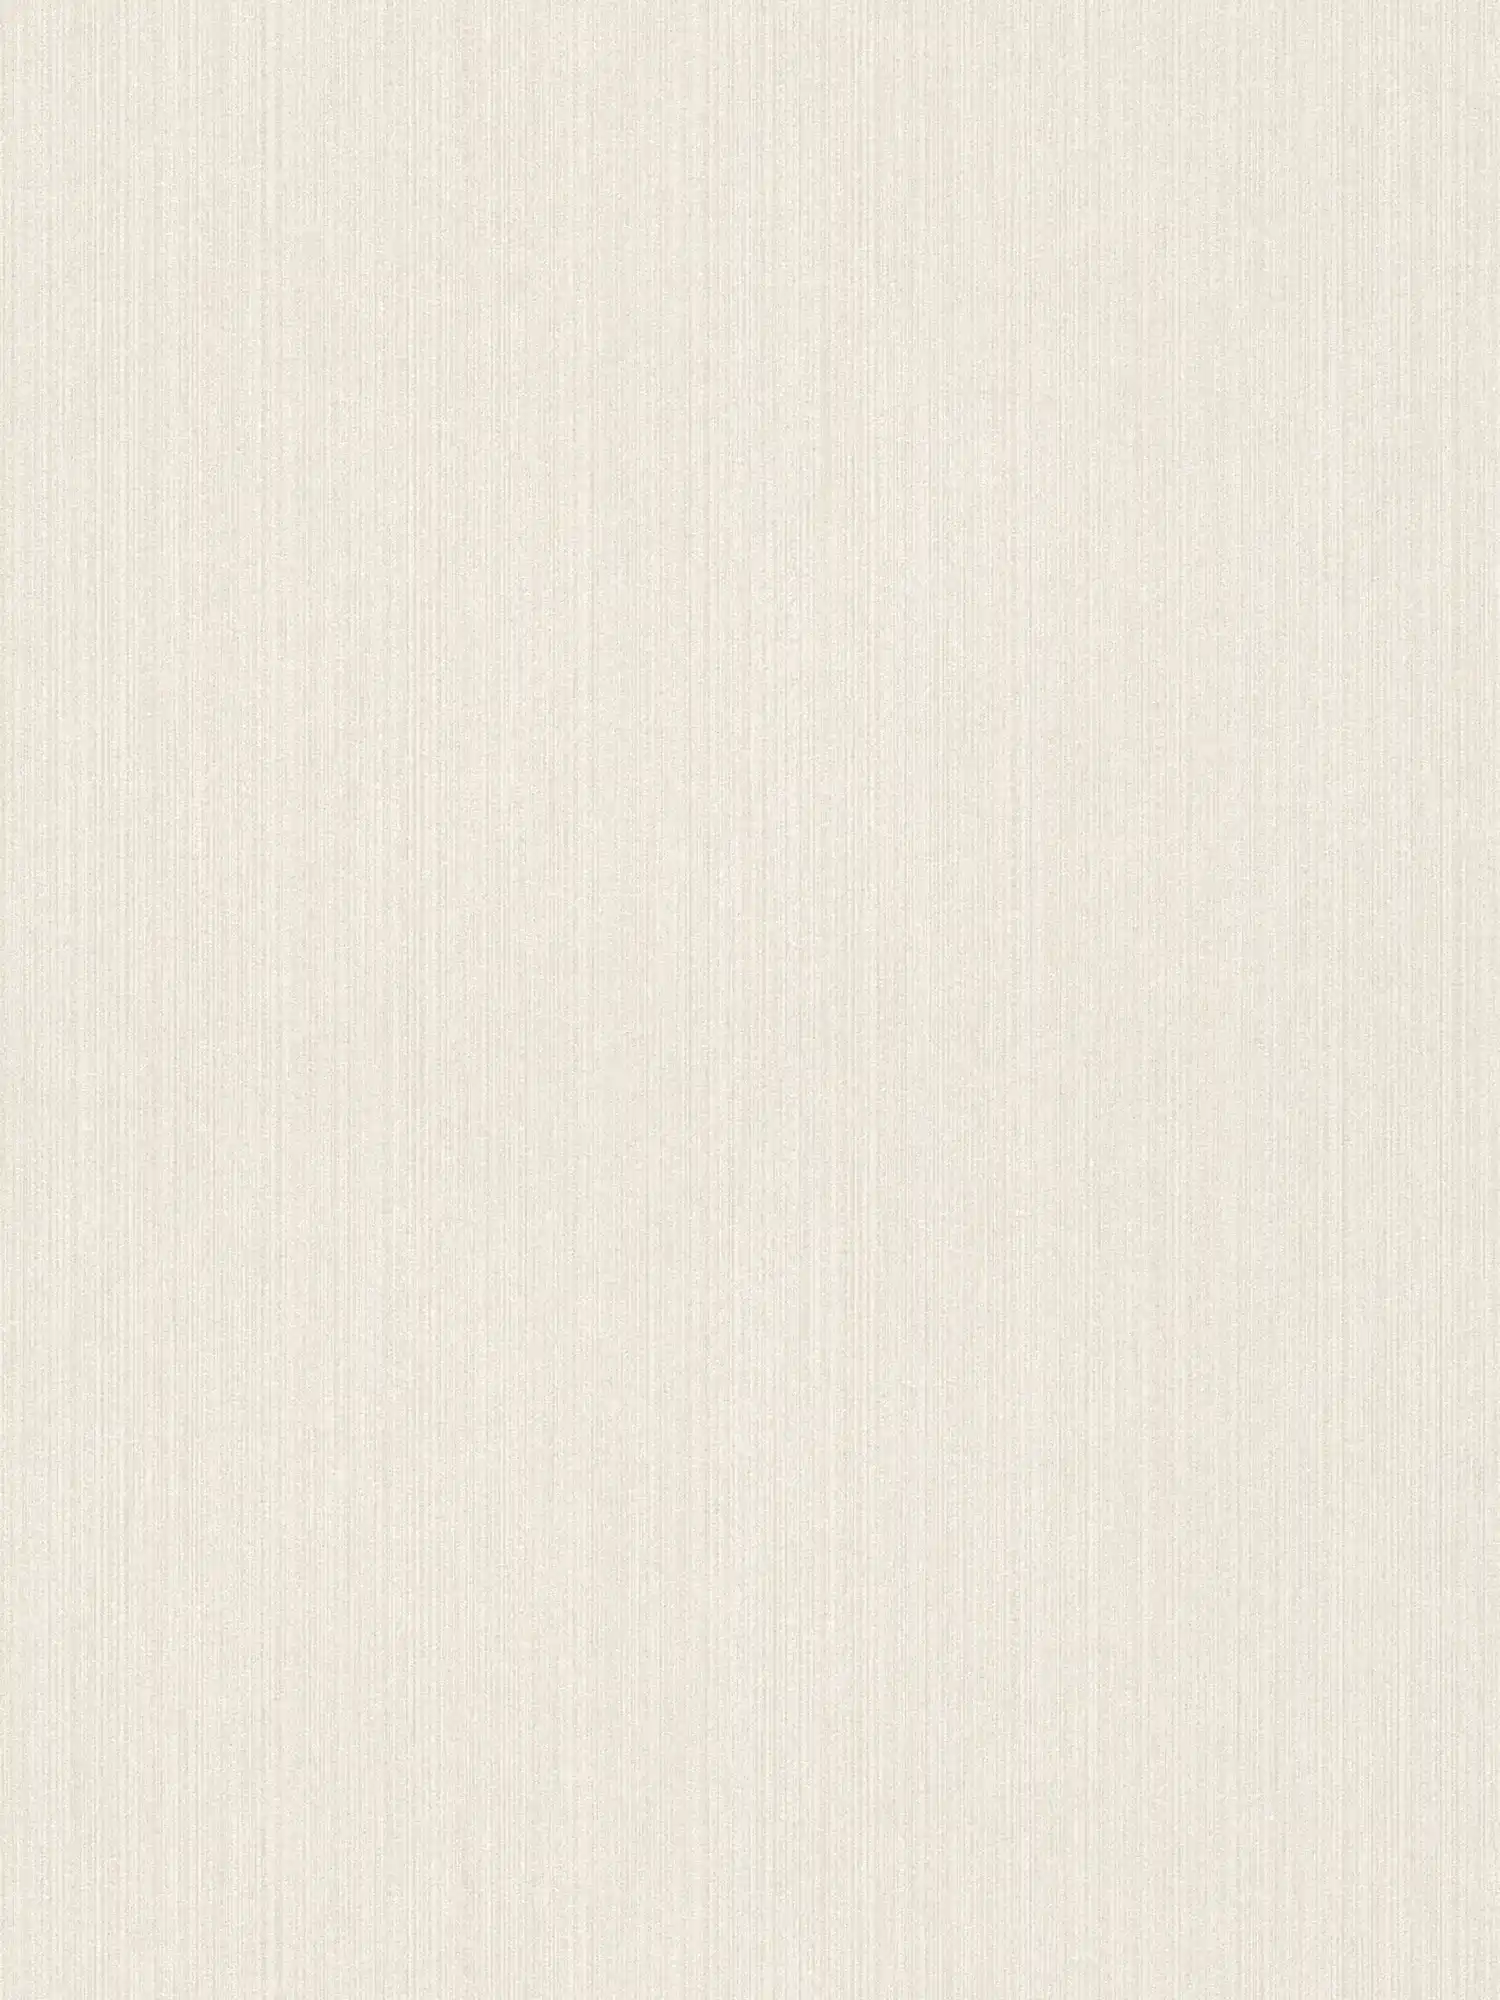         Carta da parati glitterata con design foderato e aspetto seta selvaggia - bianco
    